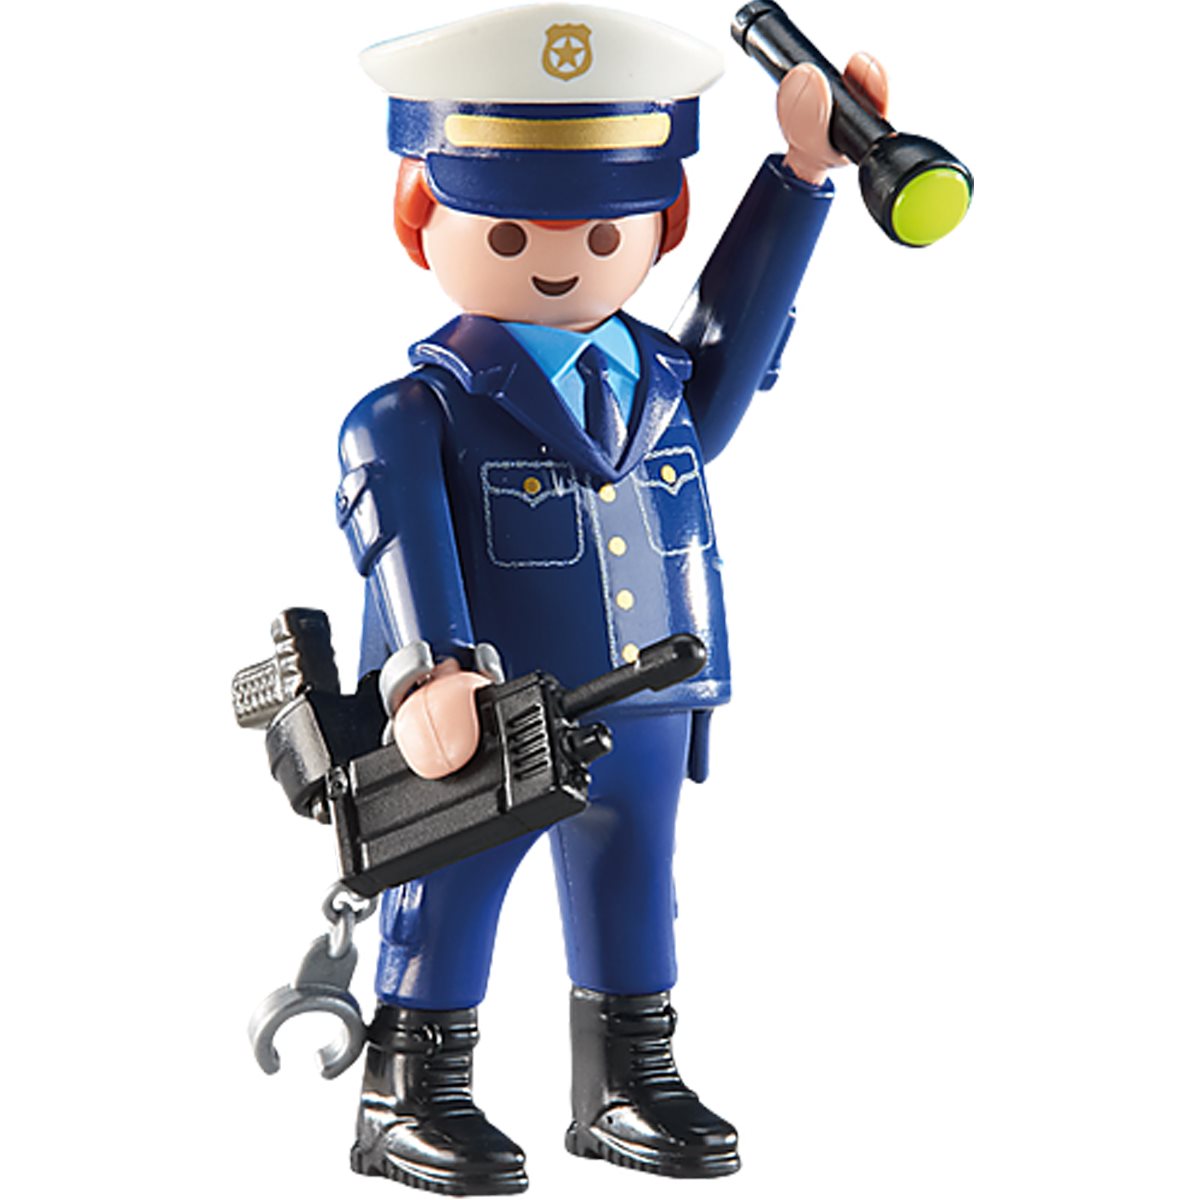 Fæstning Vanvid vinden er stærk Playmobil 6502 Police Chief Action Figure